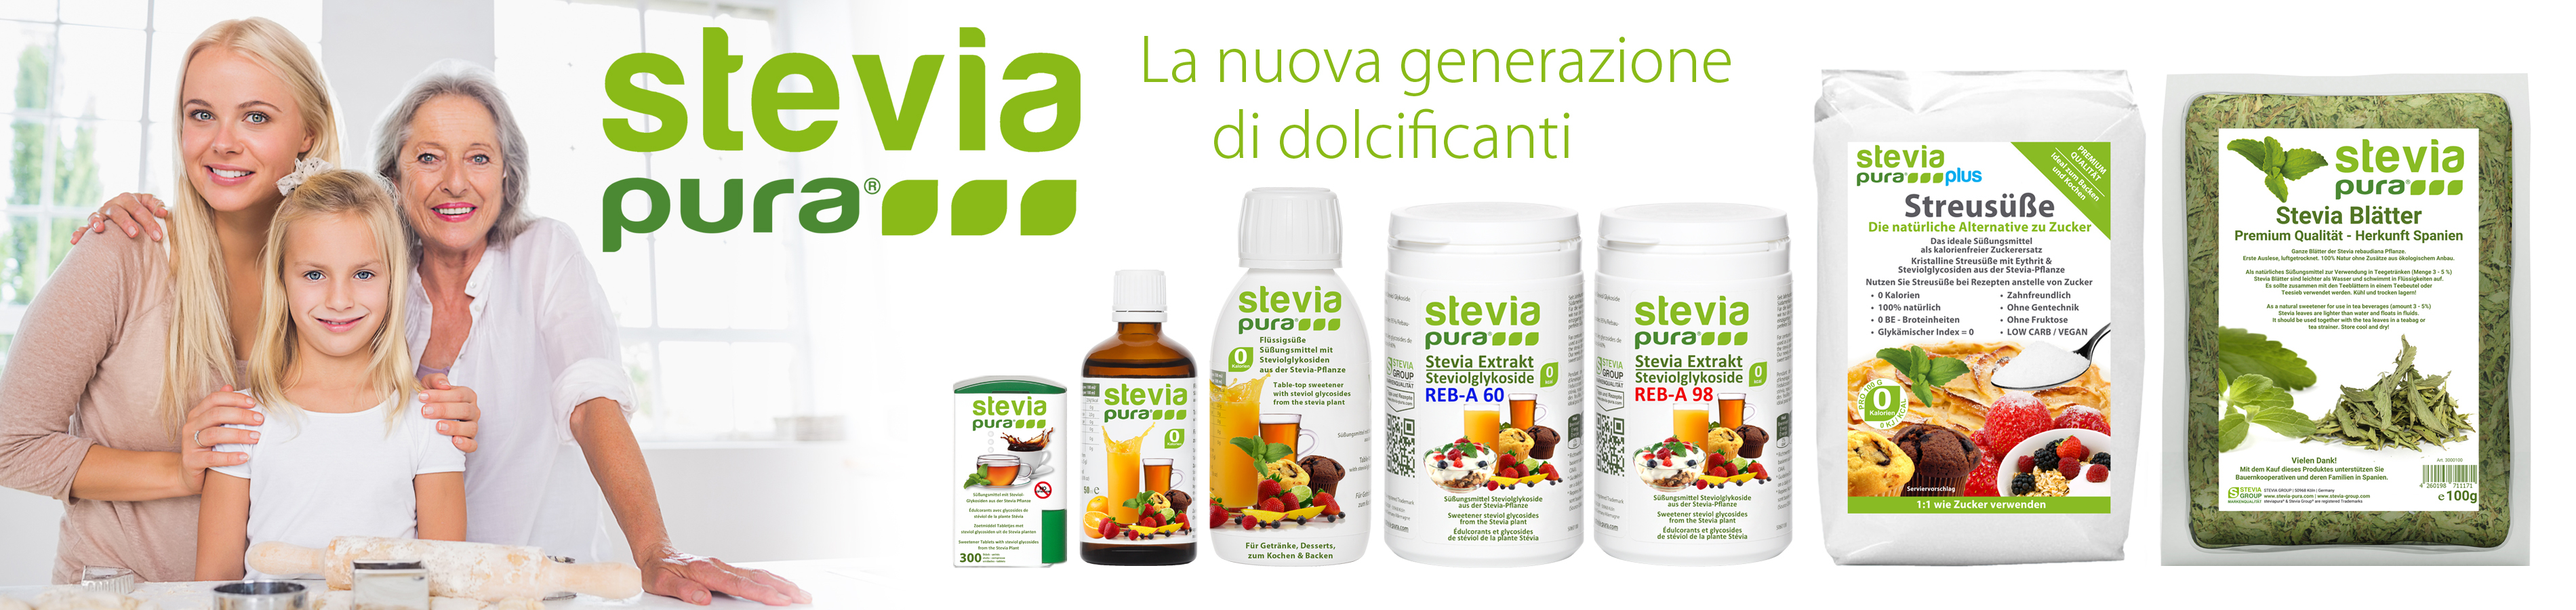 Stevia Group - La nuova generazione di dolcificanti:...